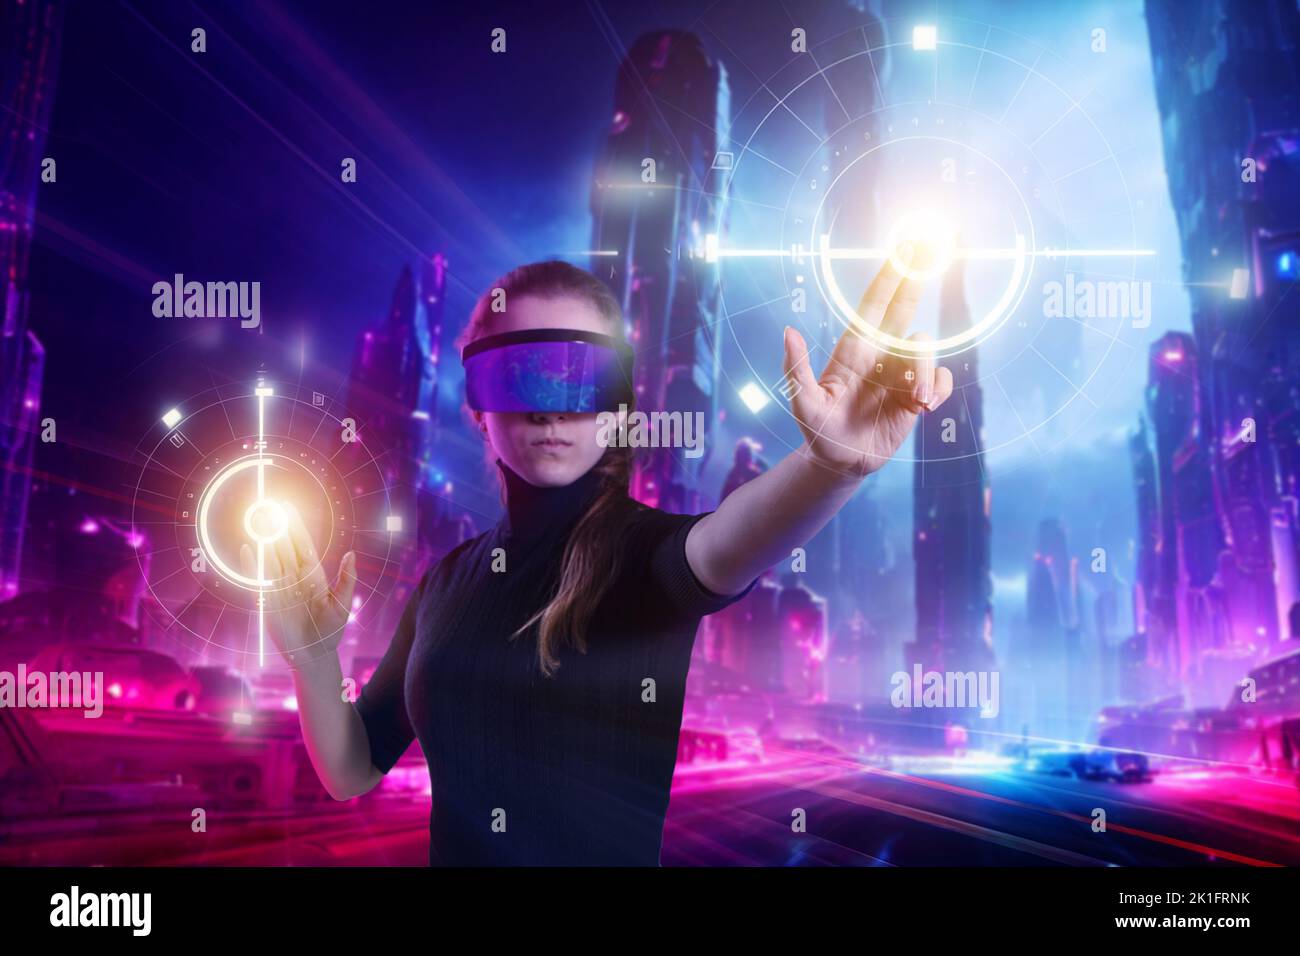 Une fille en lunettes de réalité virtuelle. Concept des technologies de l'avenir. Voyage en métaverse. Lumières au néon colorées. Banque D'Images